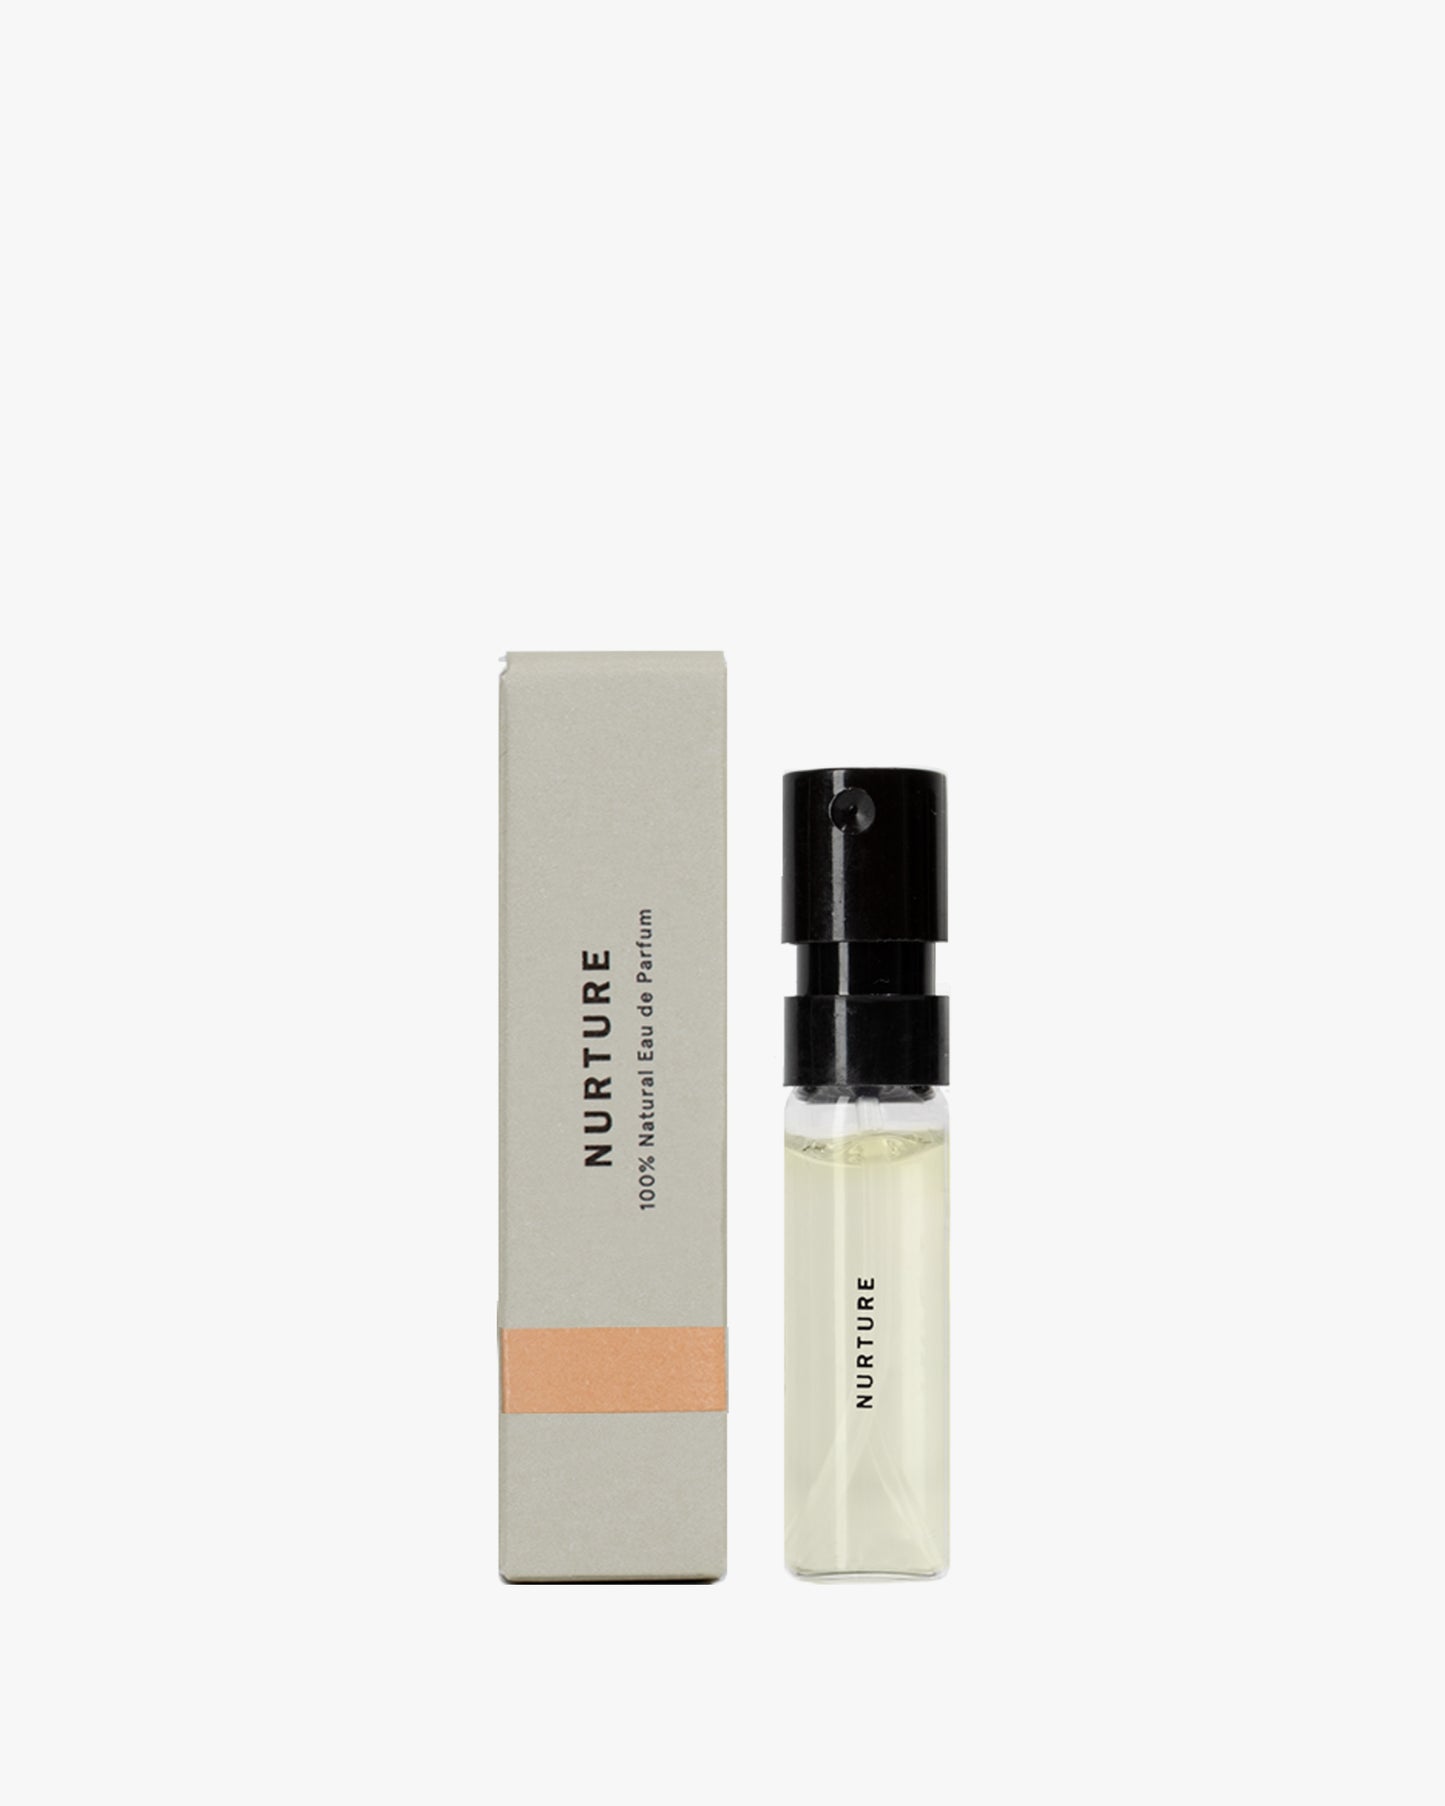 100% Natural Eau de Parfum – Nurture